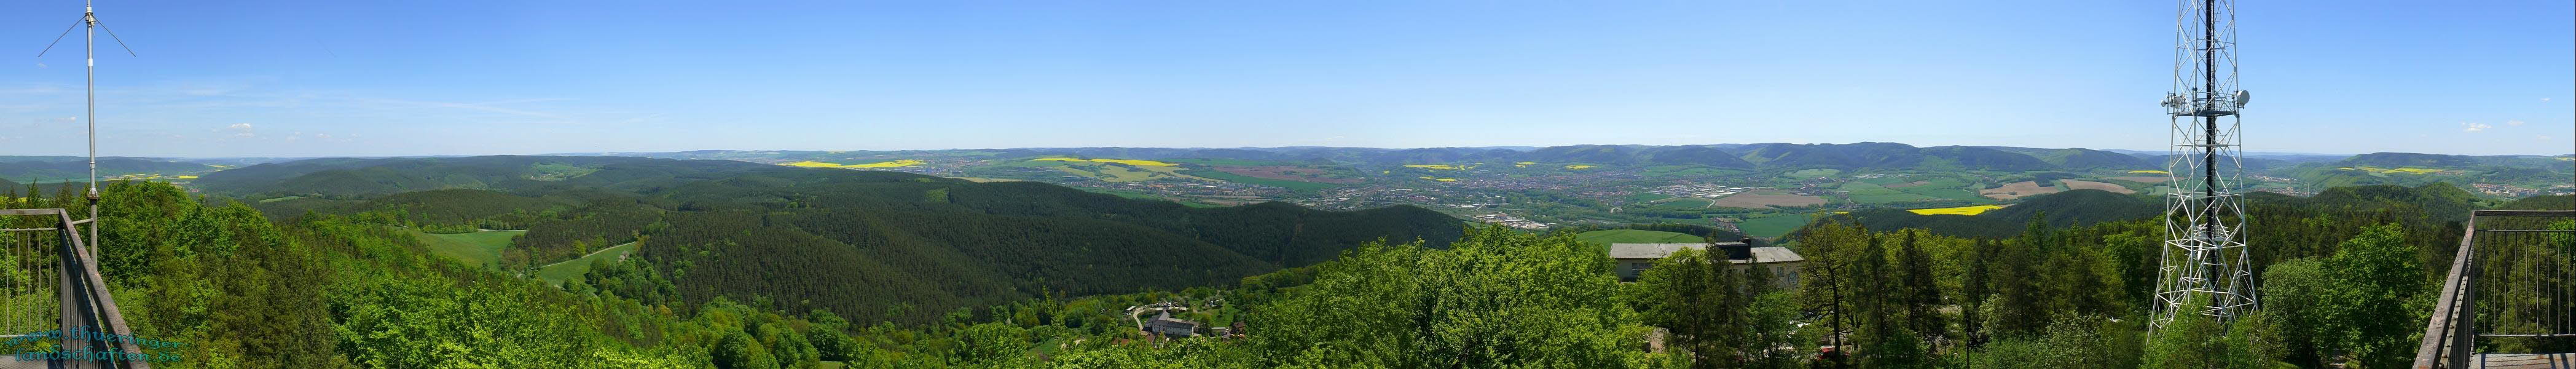 Blick vom Kulm Saalfeld nach Sden - Unterwellenborn, Saalfeld, Saaletal